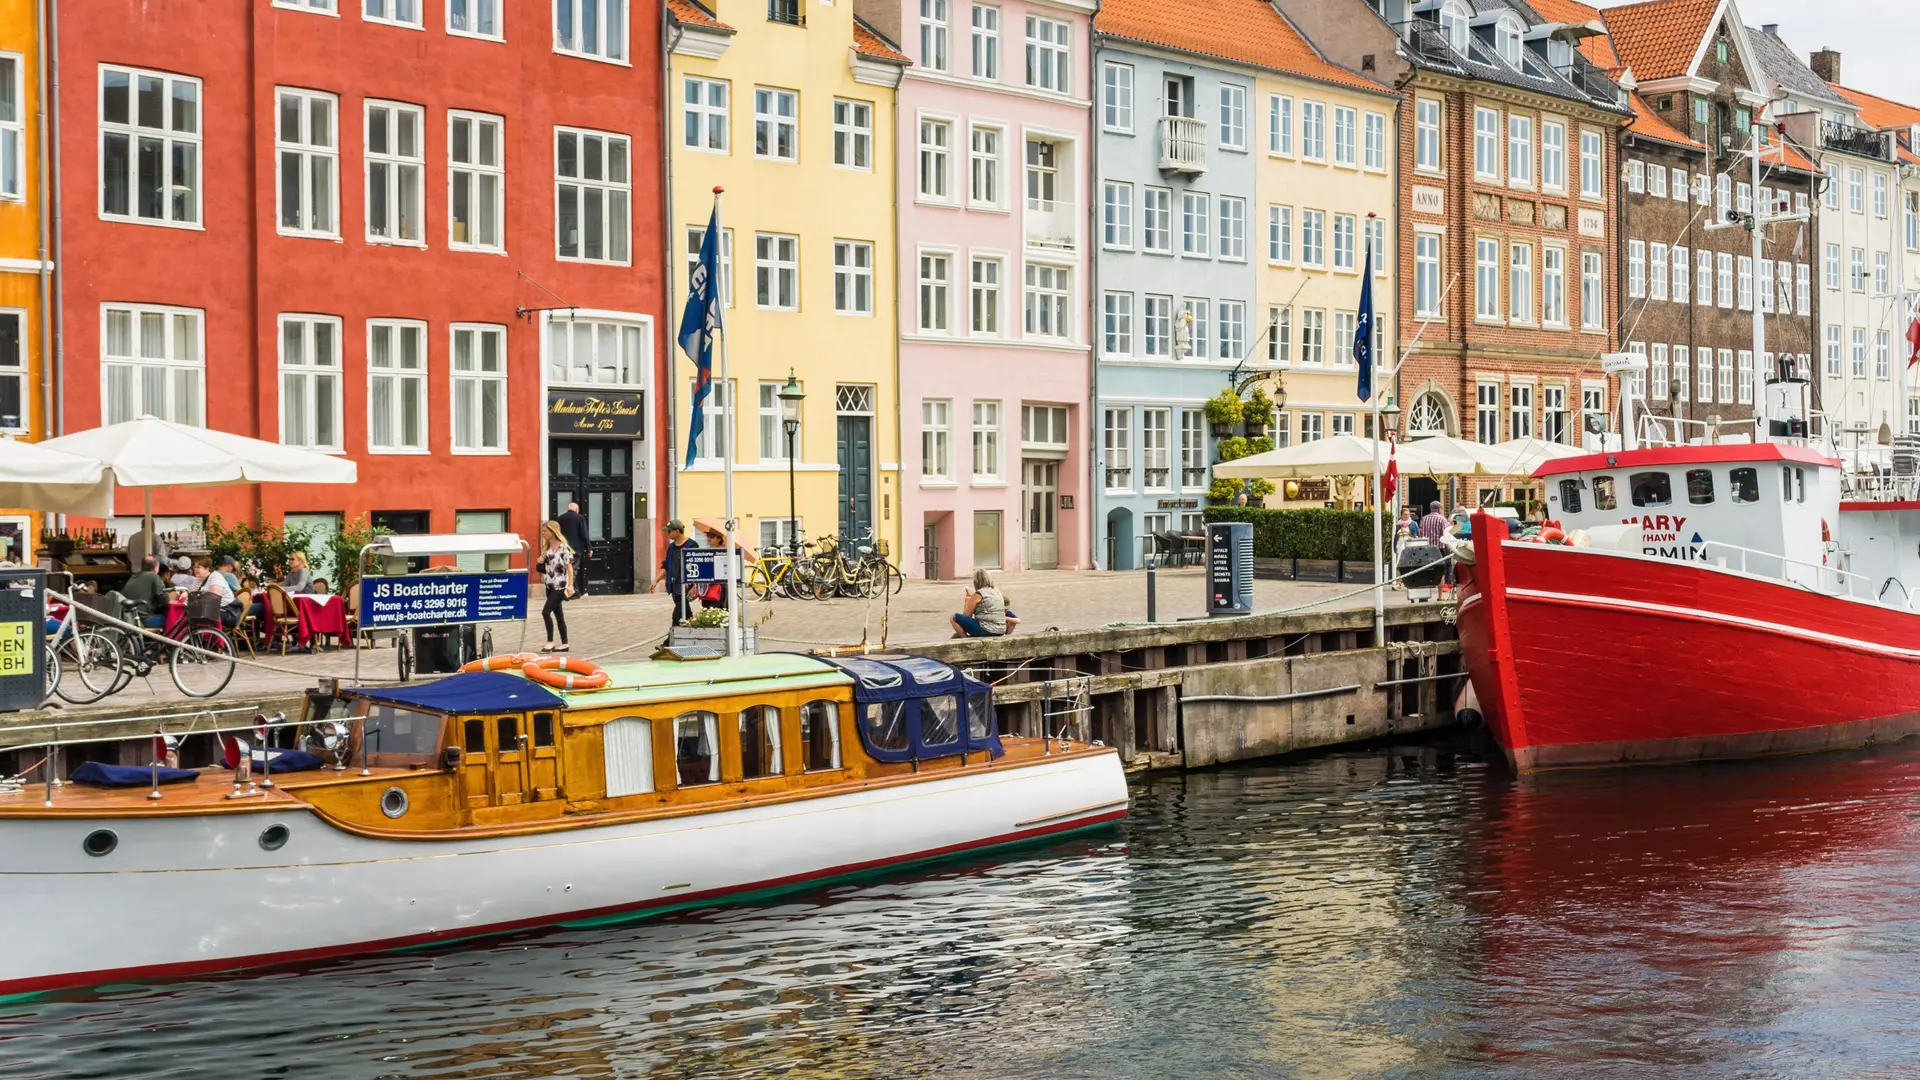 Bunte Häuser mit Gewässer und Booten in Kopenhagen.